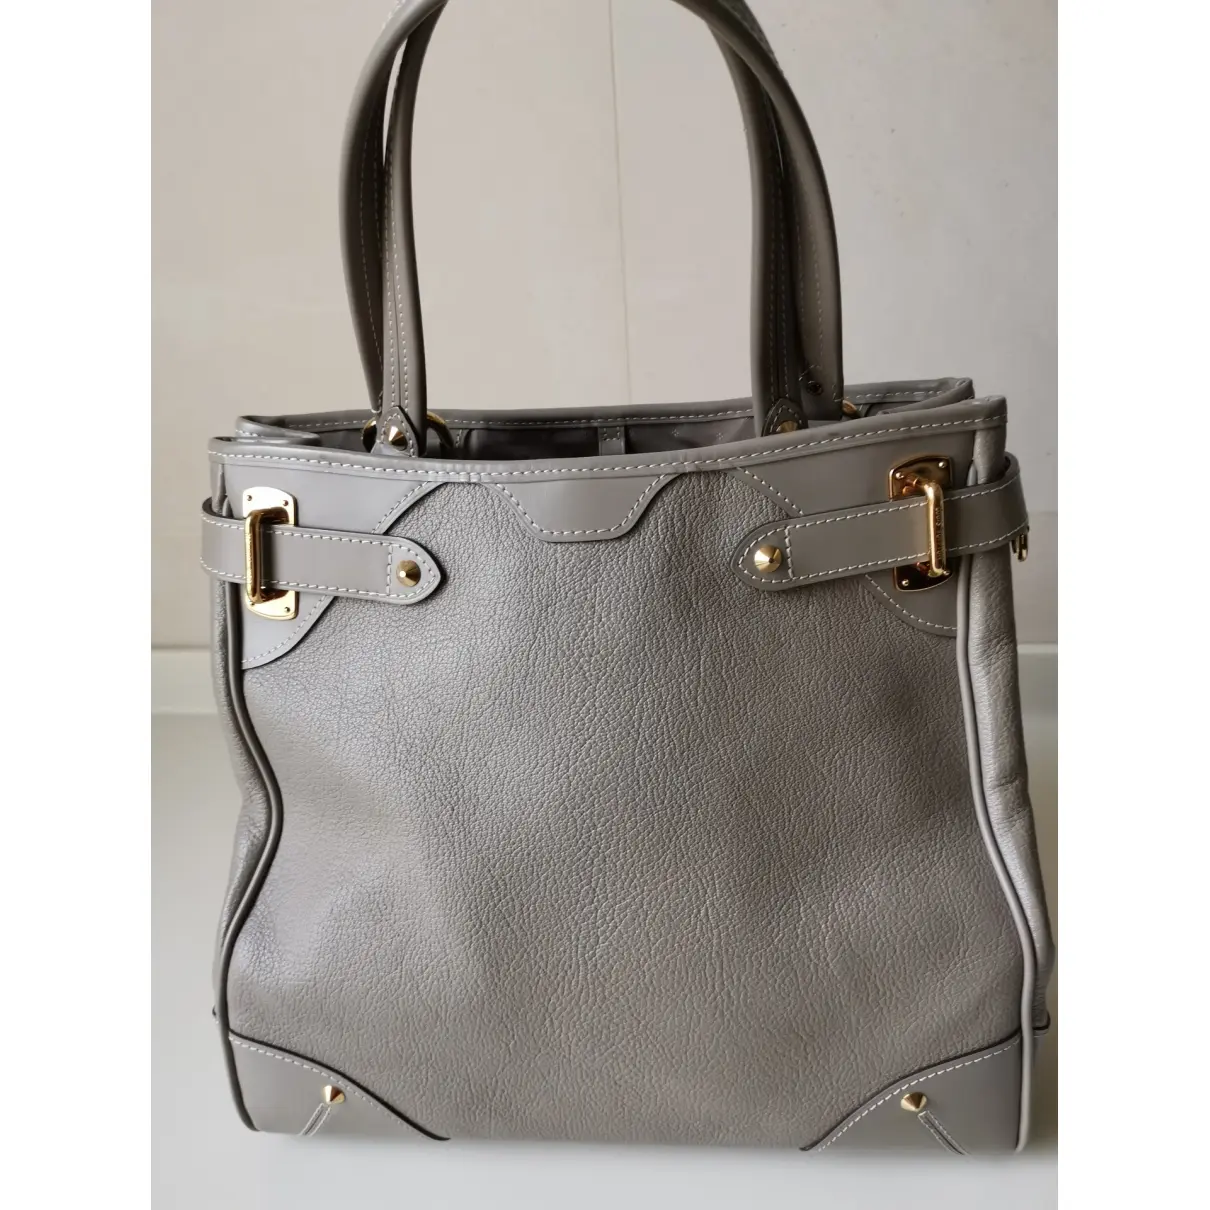 Buy Louis Vuitton Le Radieux leather handbag online